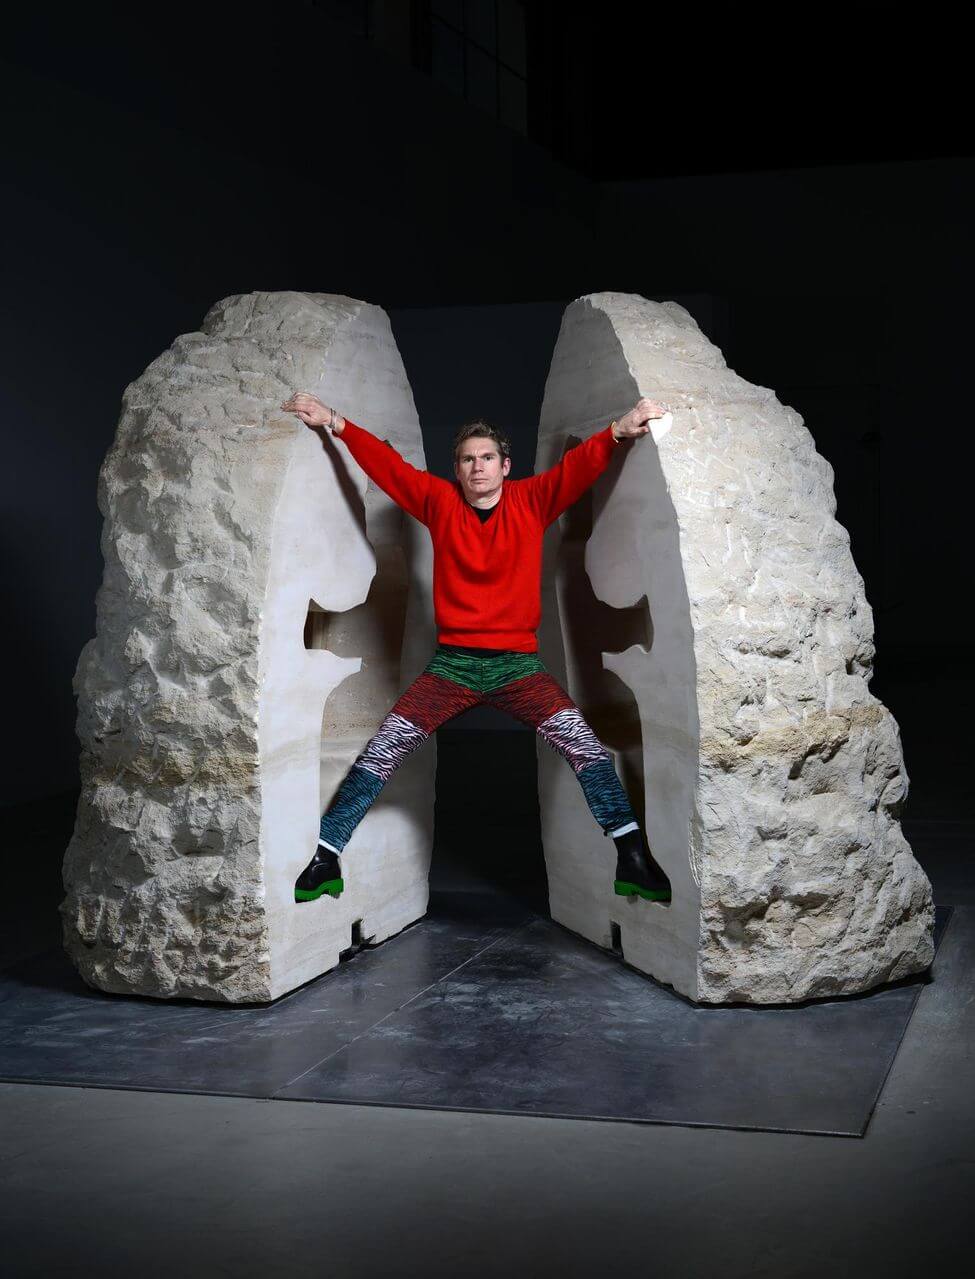 法國行為藝術家亞伯拉罕．伯亞伯拉罕．伯安什瓦爾（Abraham_Poincheval）最新的行為藝術作品《石頭》。圖:取自didyouknowfacts。.jpg